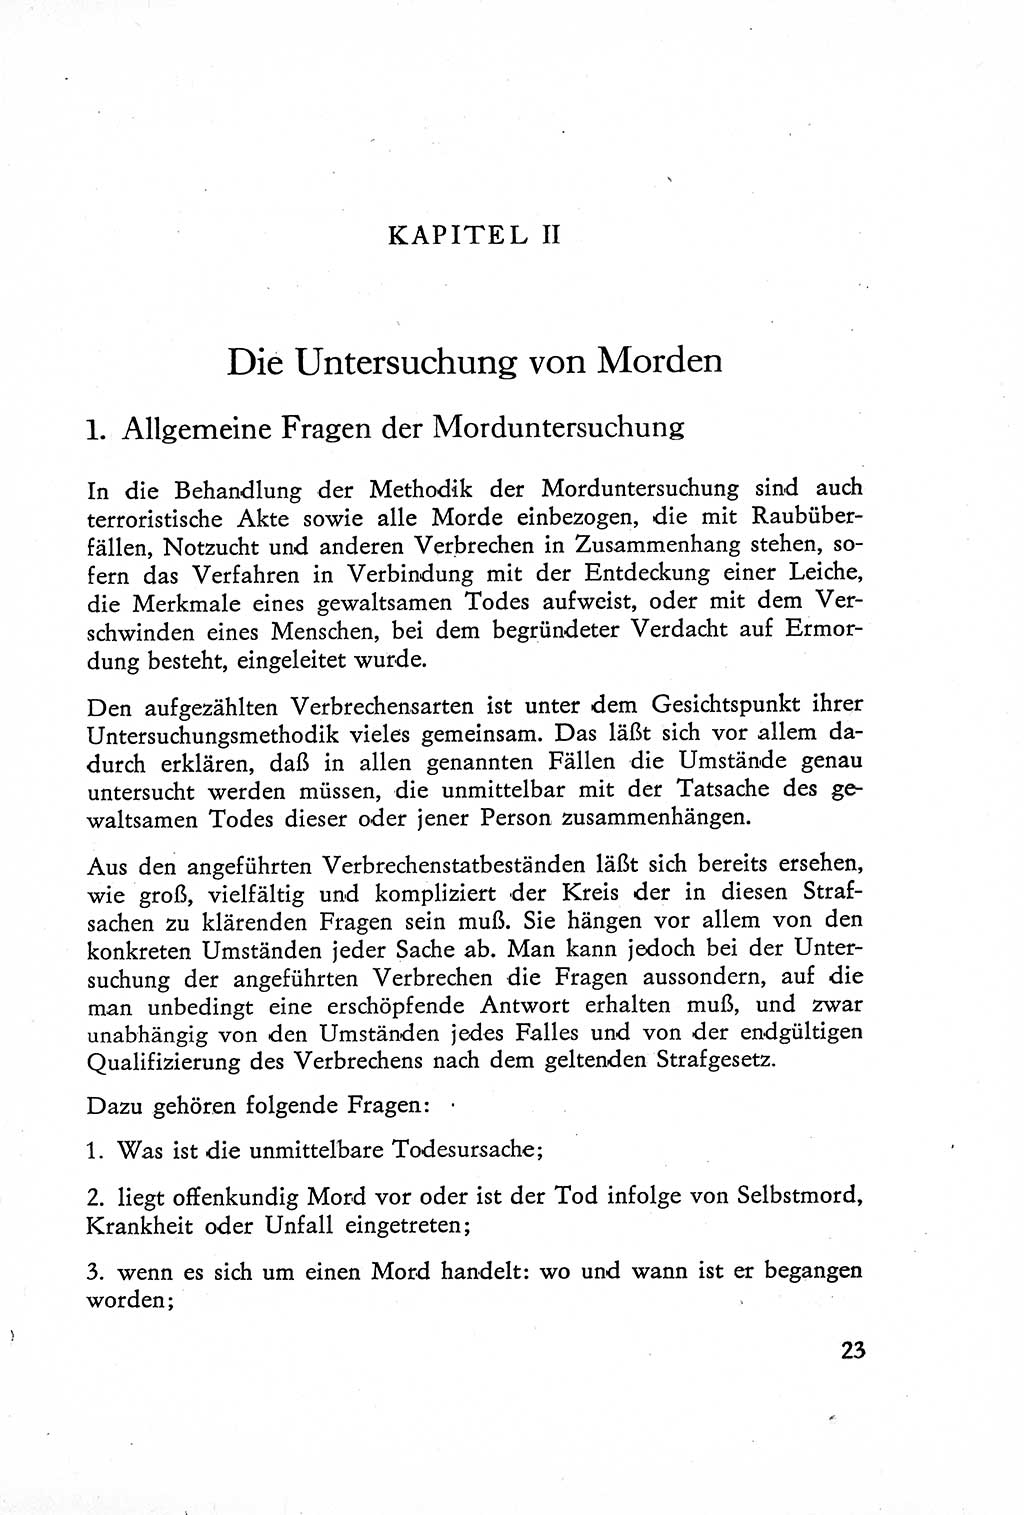 Die Untersuchung einzelner Verbrechensarten [Deutsche Demokratische Republik (DDR)] 1960, Seite 23 (Unters. Verbr.-Art. DDR 1960, S. 23)